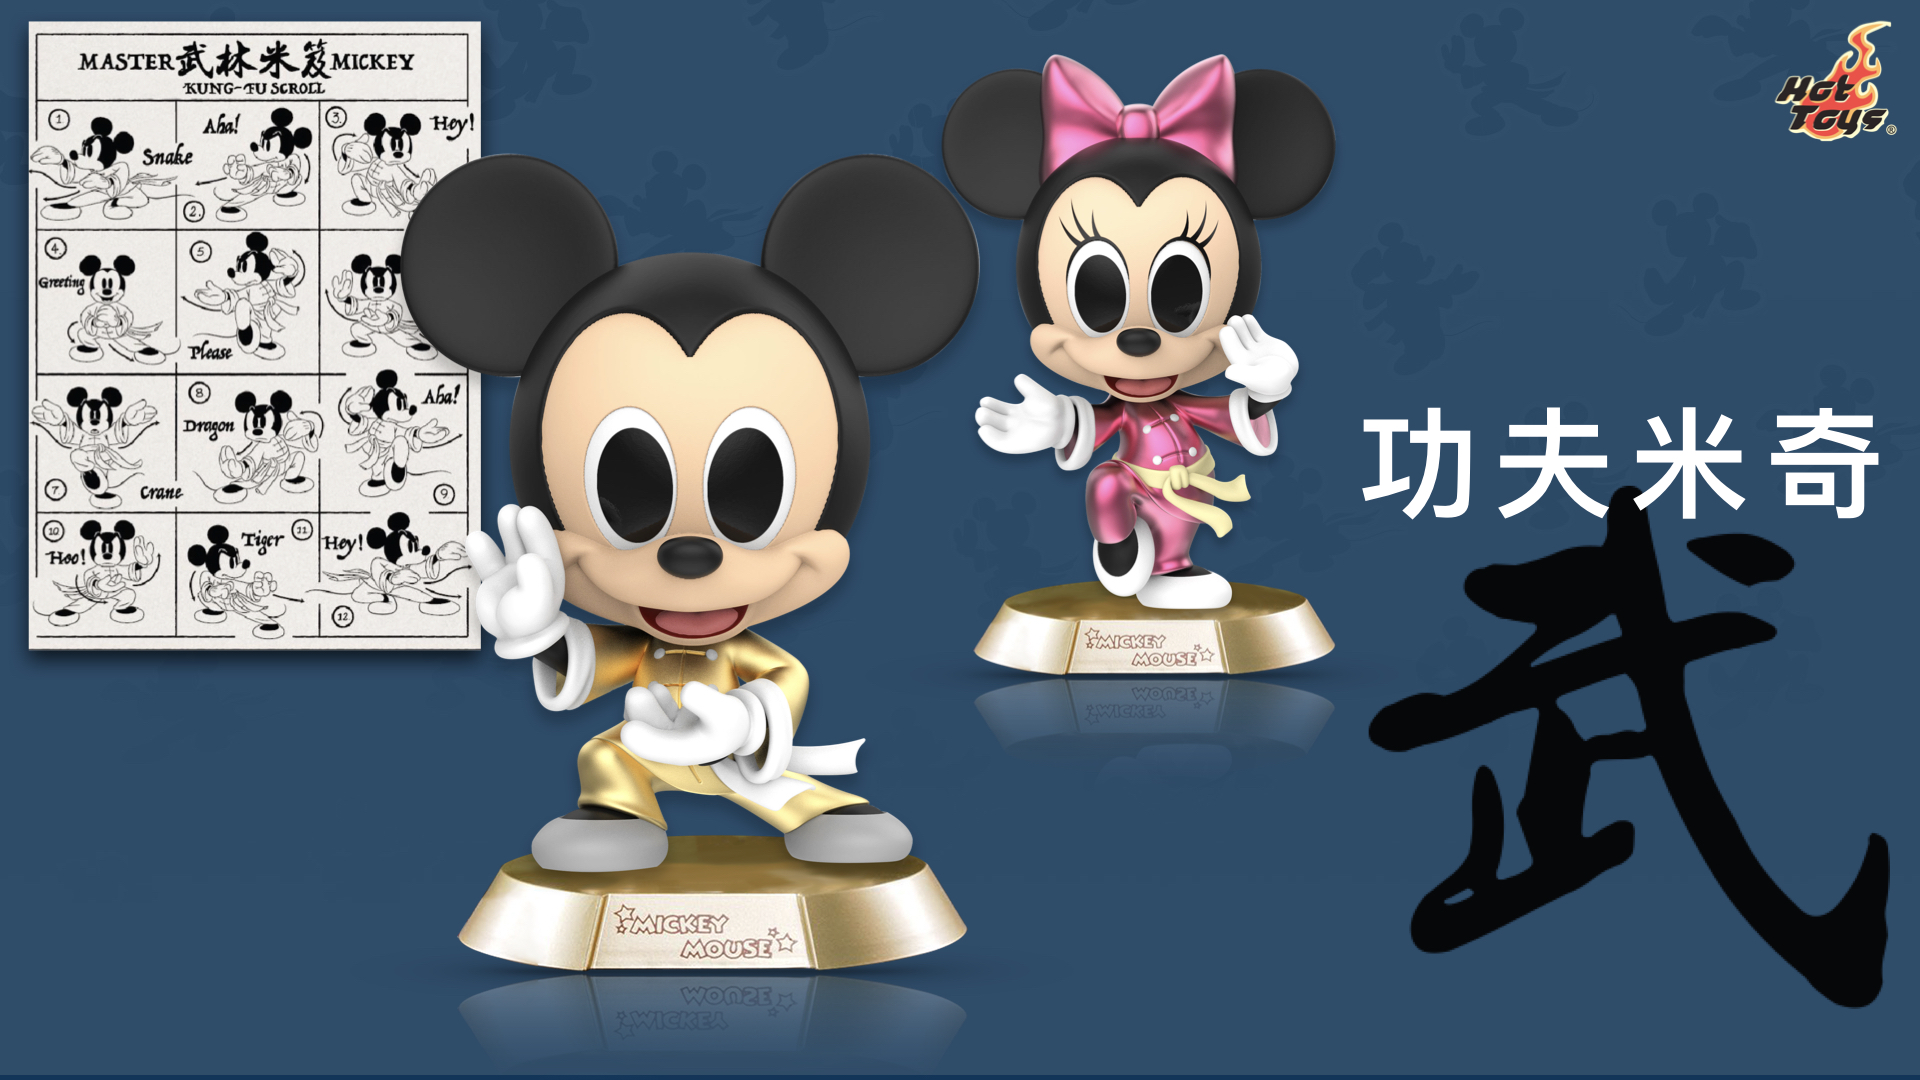 ねずみ年にミッキーが主役 ディズニーは人気ブランドとのコラボ商品が続々 36kr Japan 最大級の中国テック スタートアップ専門メディア